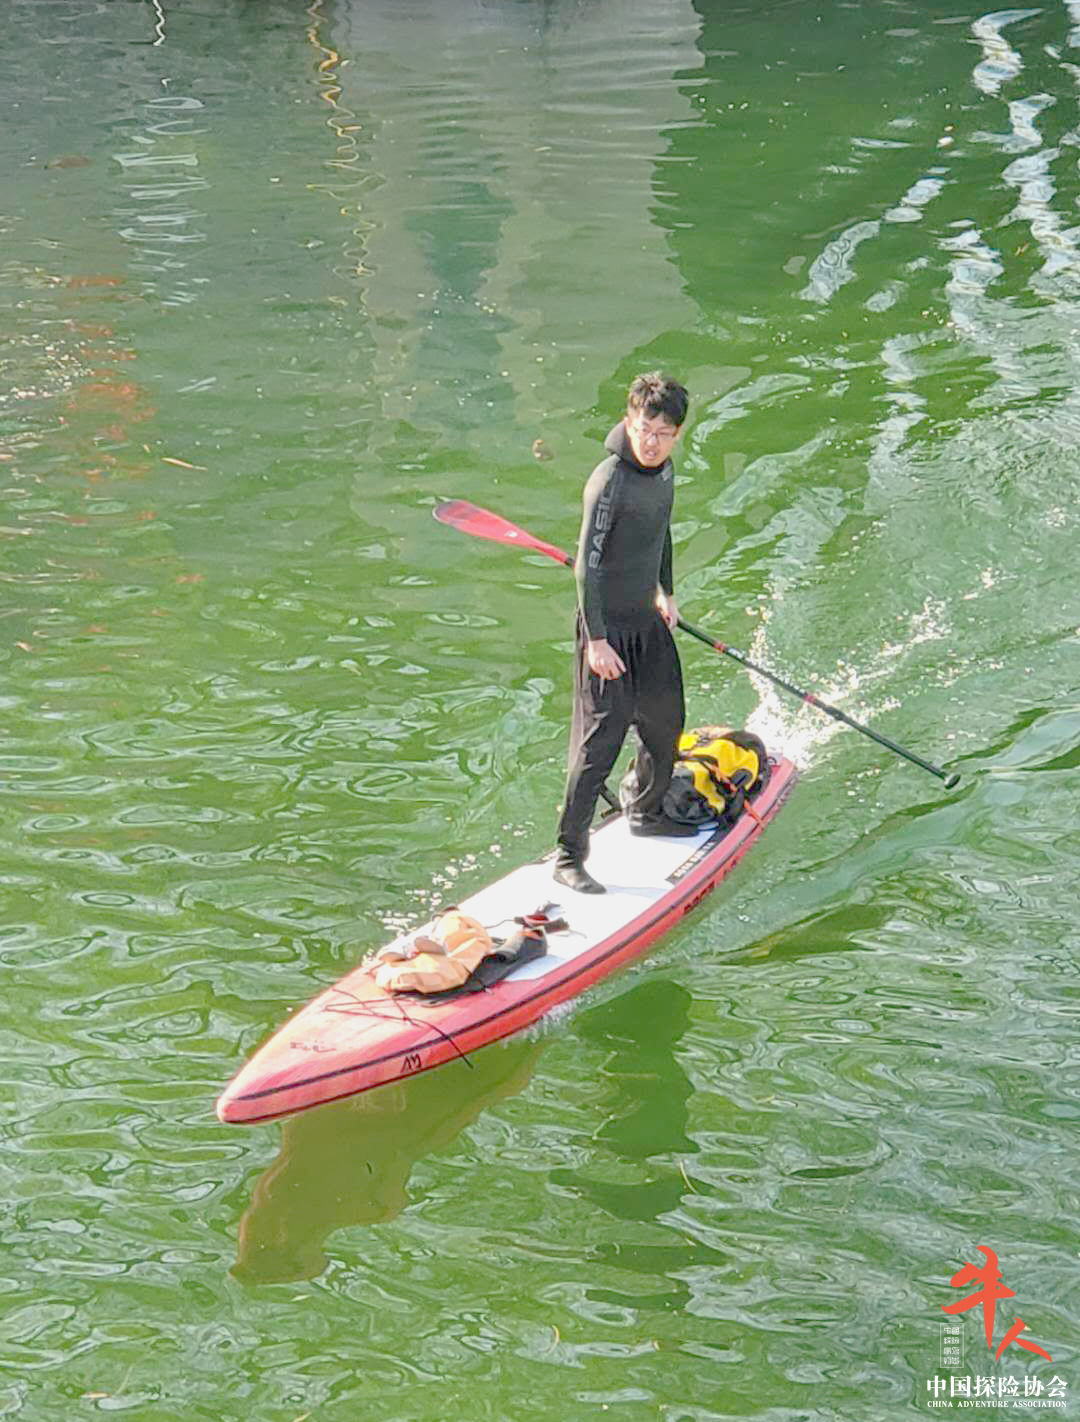 牛人 | 田思维：划水的快乐，被这届年轻人用一块桨板整明白了